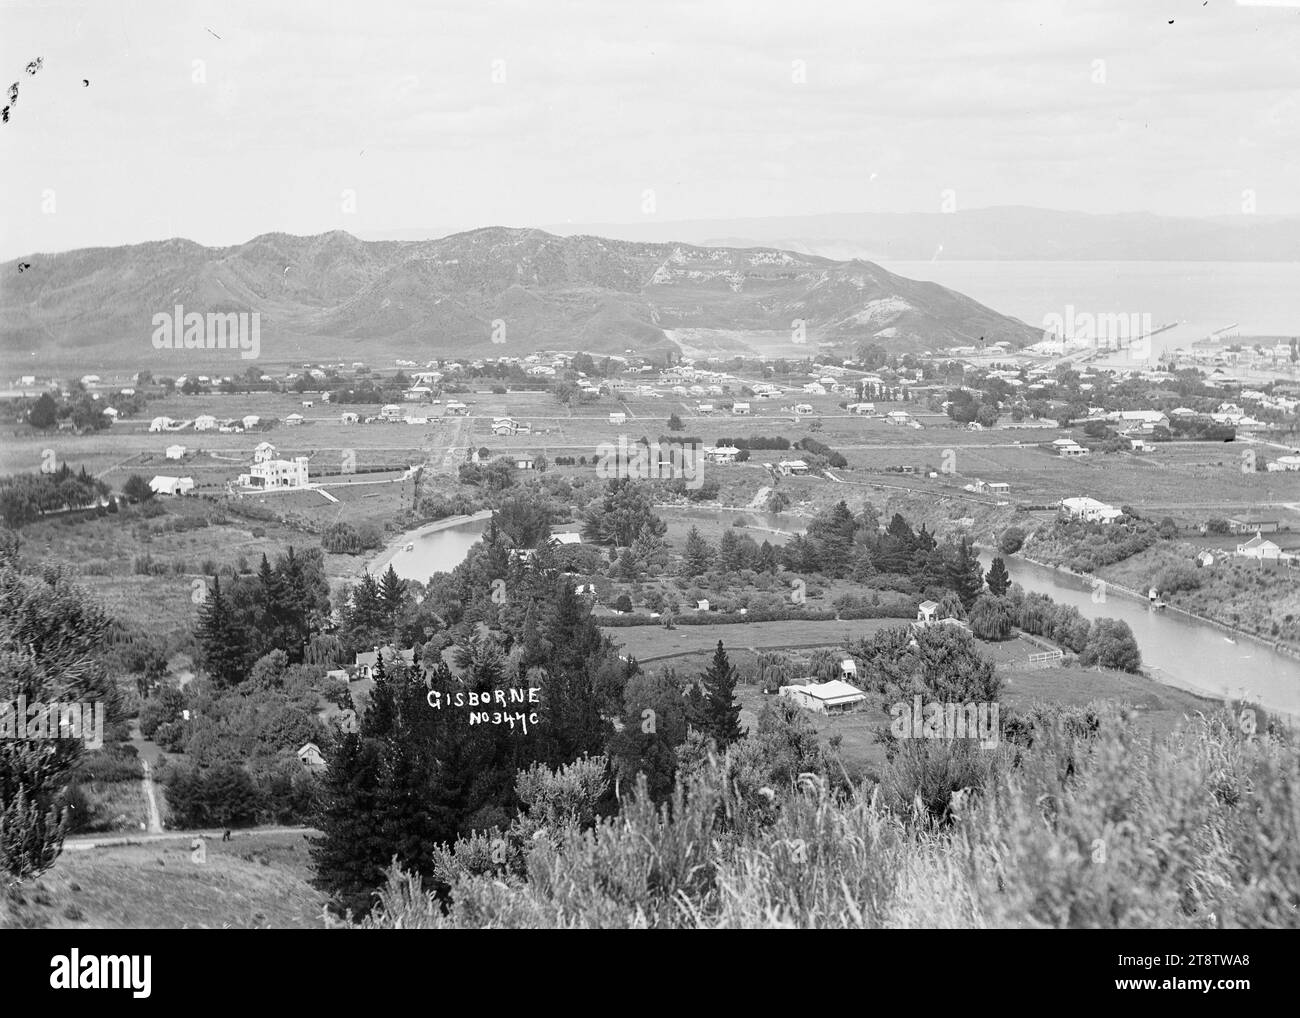 Vue panoramique de Gisborne, vue panoramique prise d'un point de vue élevé regardant vers la colline de Kati et la mer. Le port et le canton de Gisborne sont à l'extrême droite. circa 1910 Banque D'Images